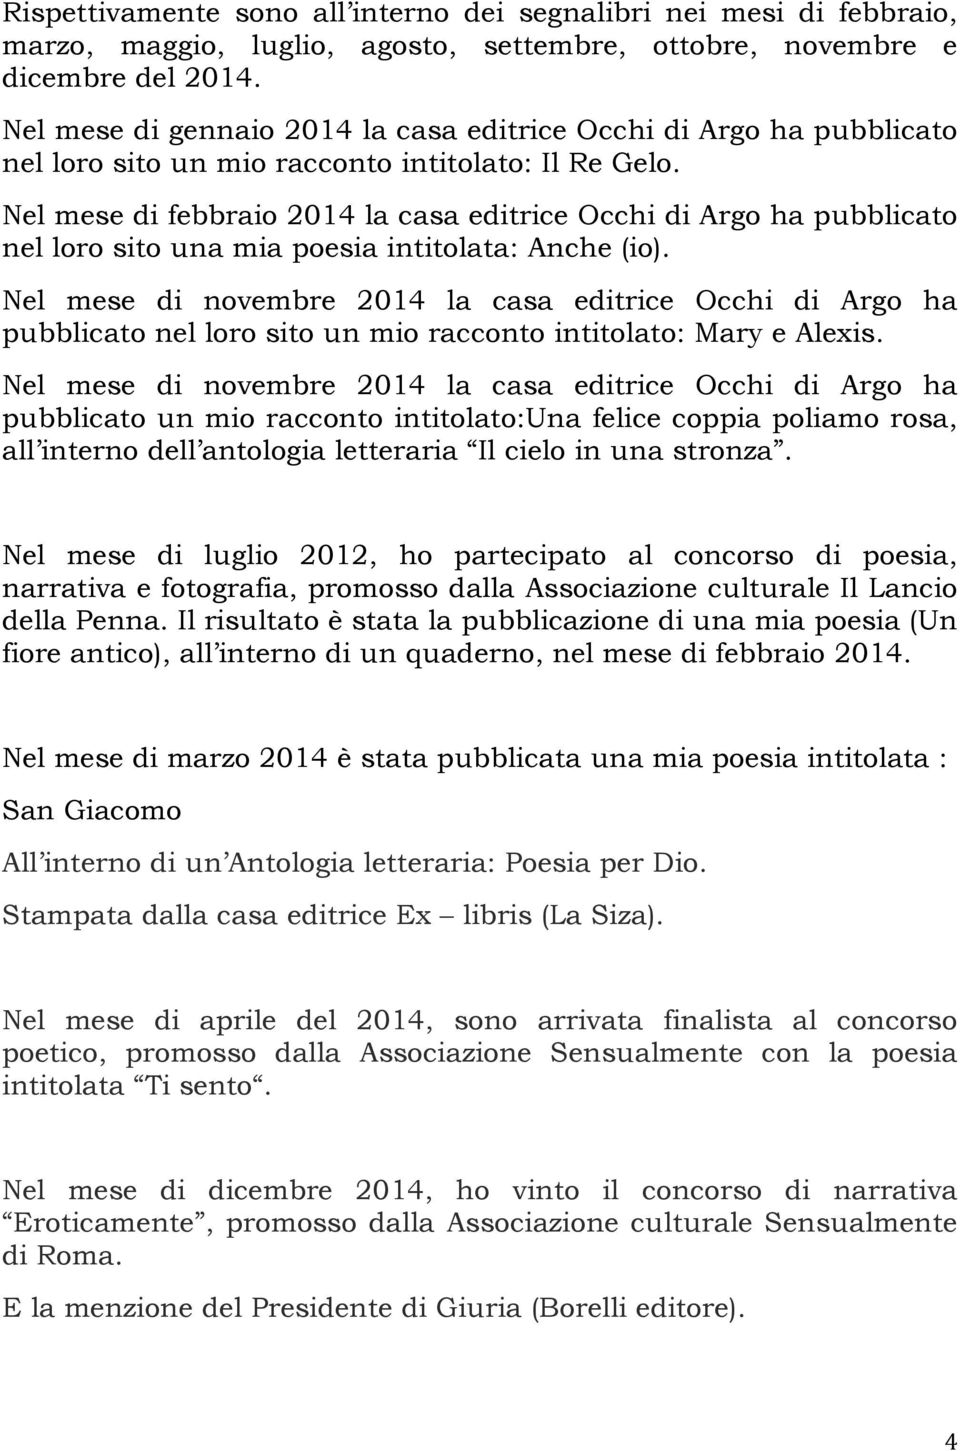 Nel mese di febbraio 2014 la casa editrice Occhi di Argo ha pubblicato nel loro sito una mia poesia intitolata: Anche (io).